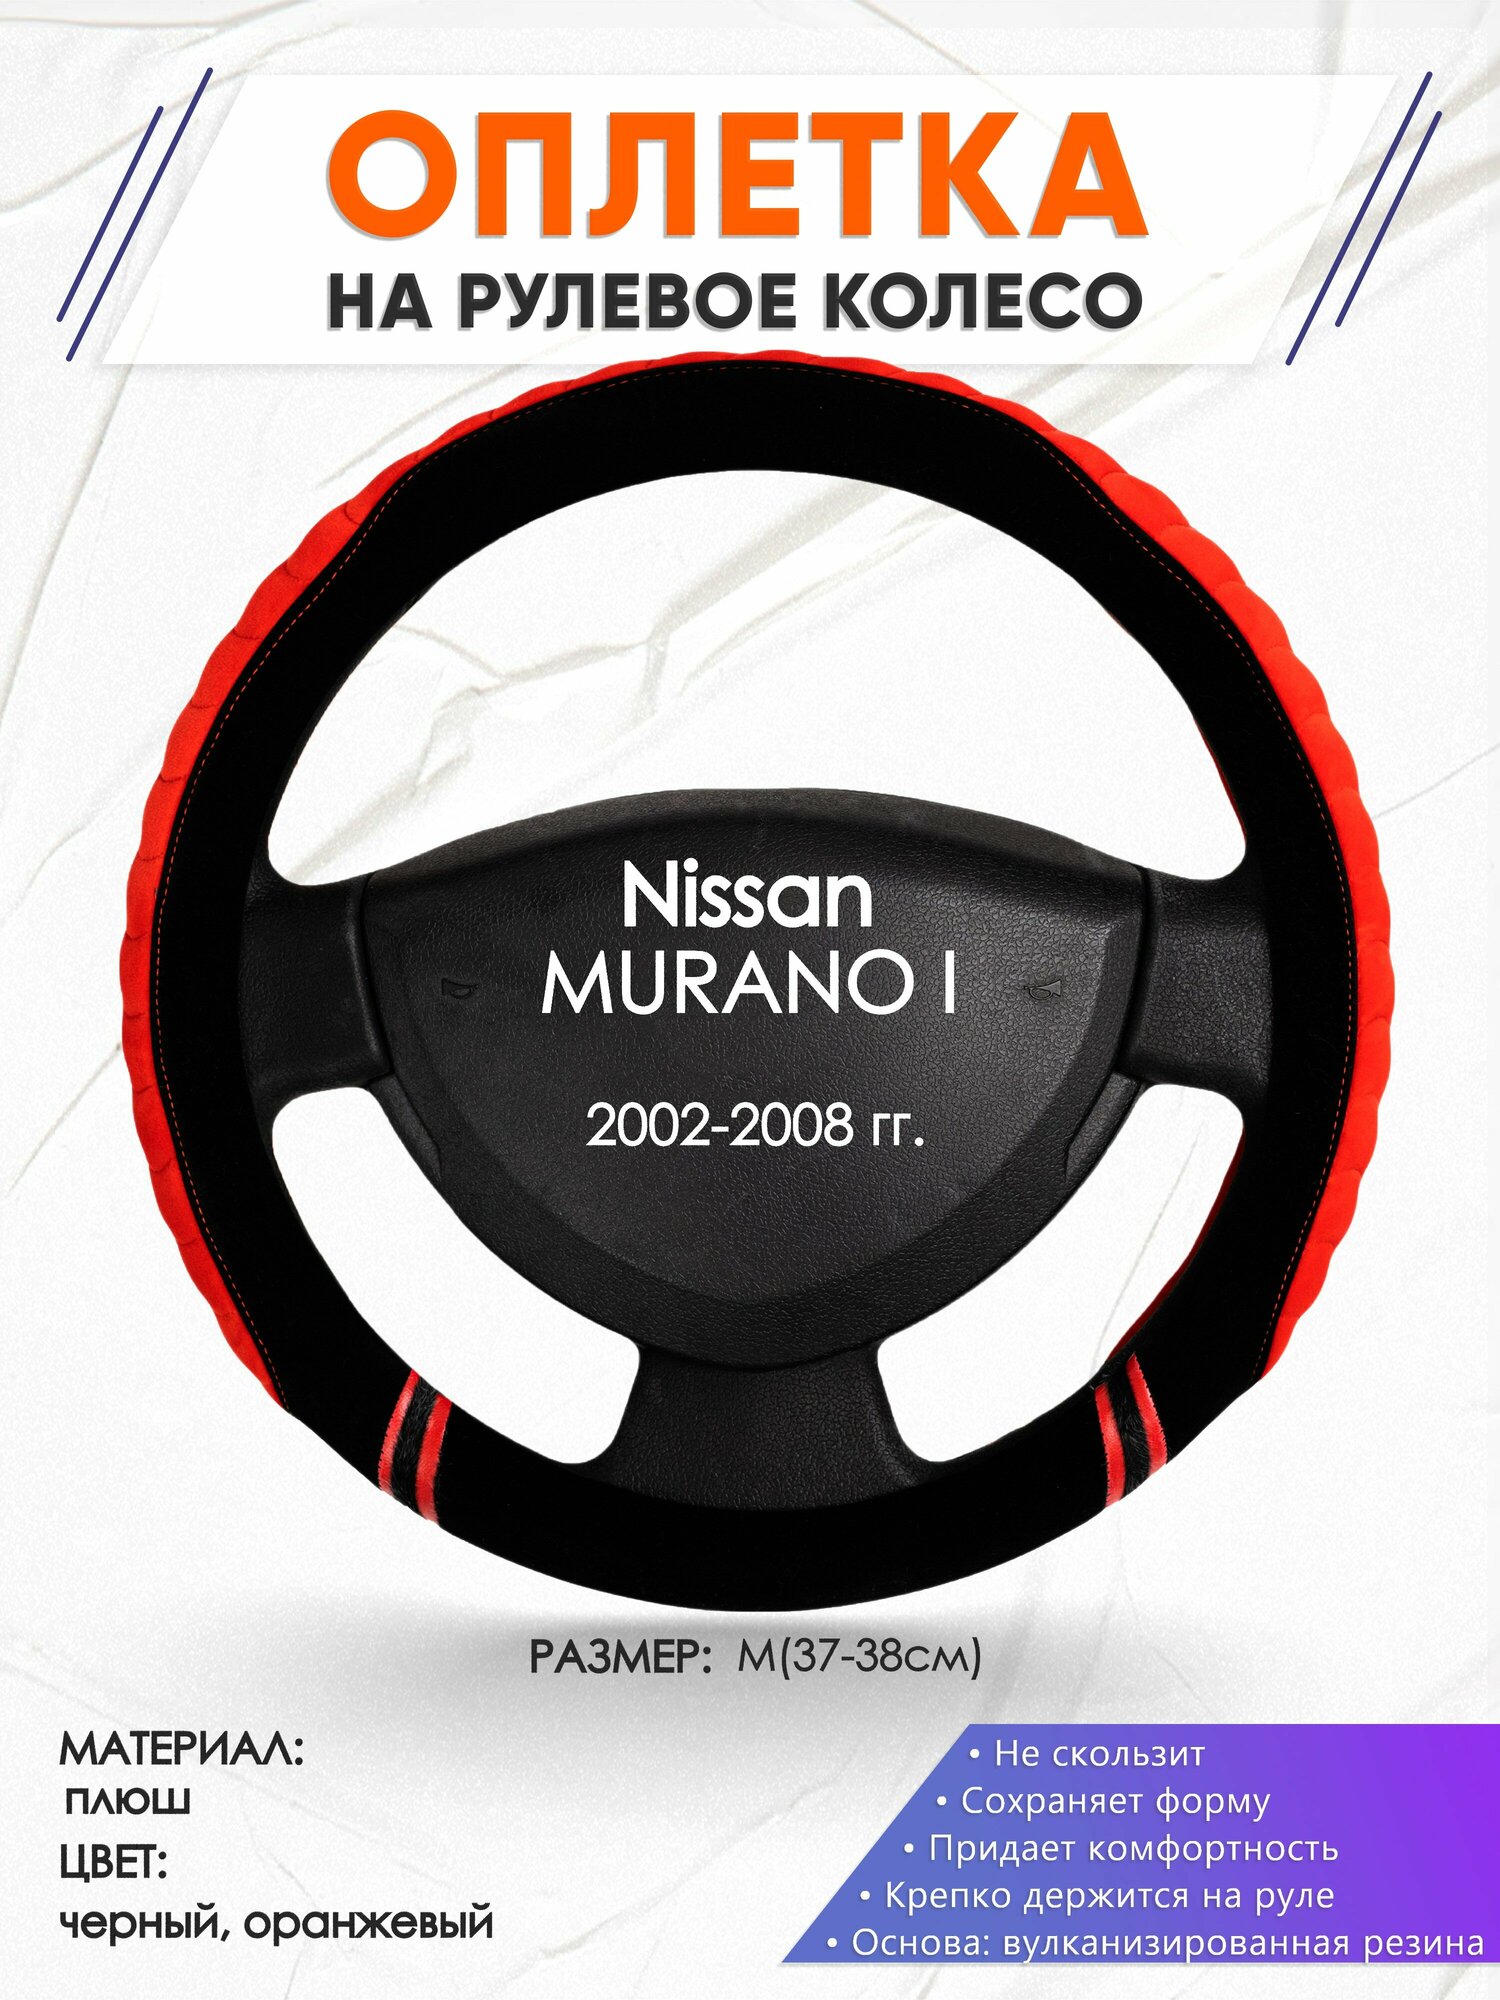 Оплетка наруль для Nissan MURANO I(Ниссан Мурано) 2002-2008 годов выпуска размер M(37-38см) Замша 36